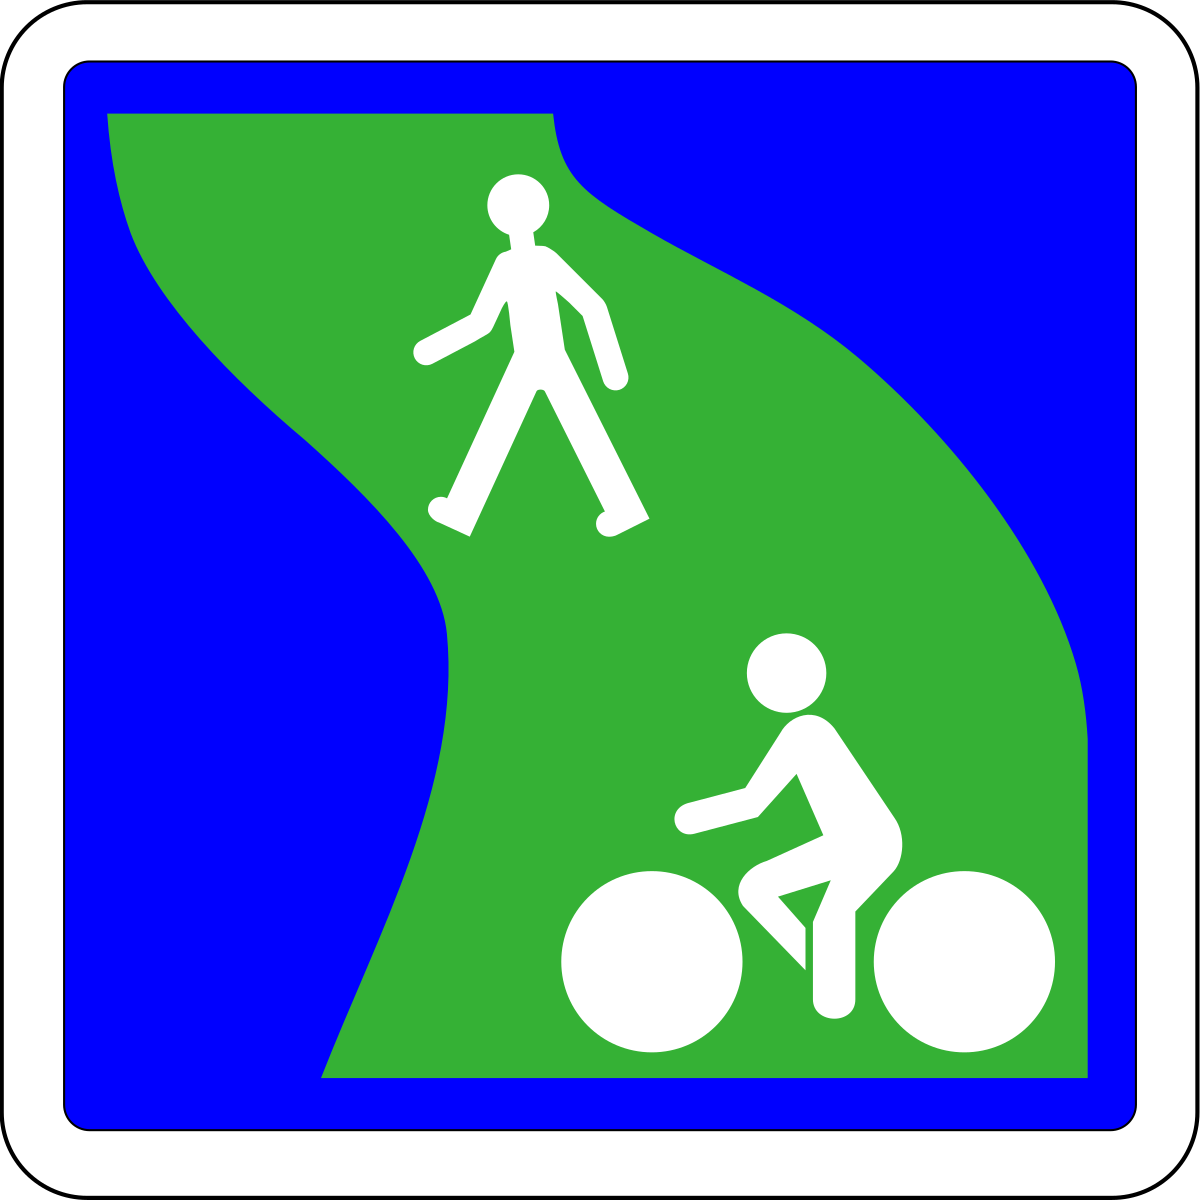 Panneau sur fond bleu que traverse un chemin en vert sur lequel circulent un piéton et un cycliste.